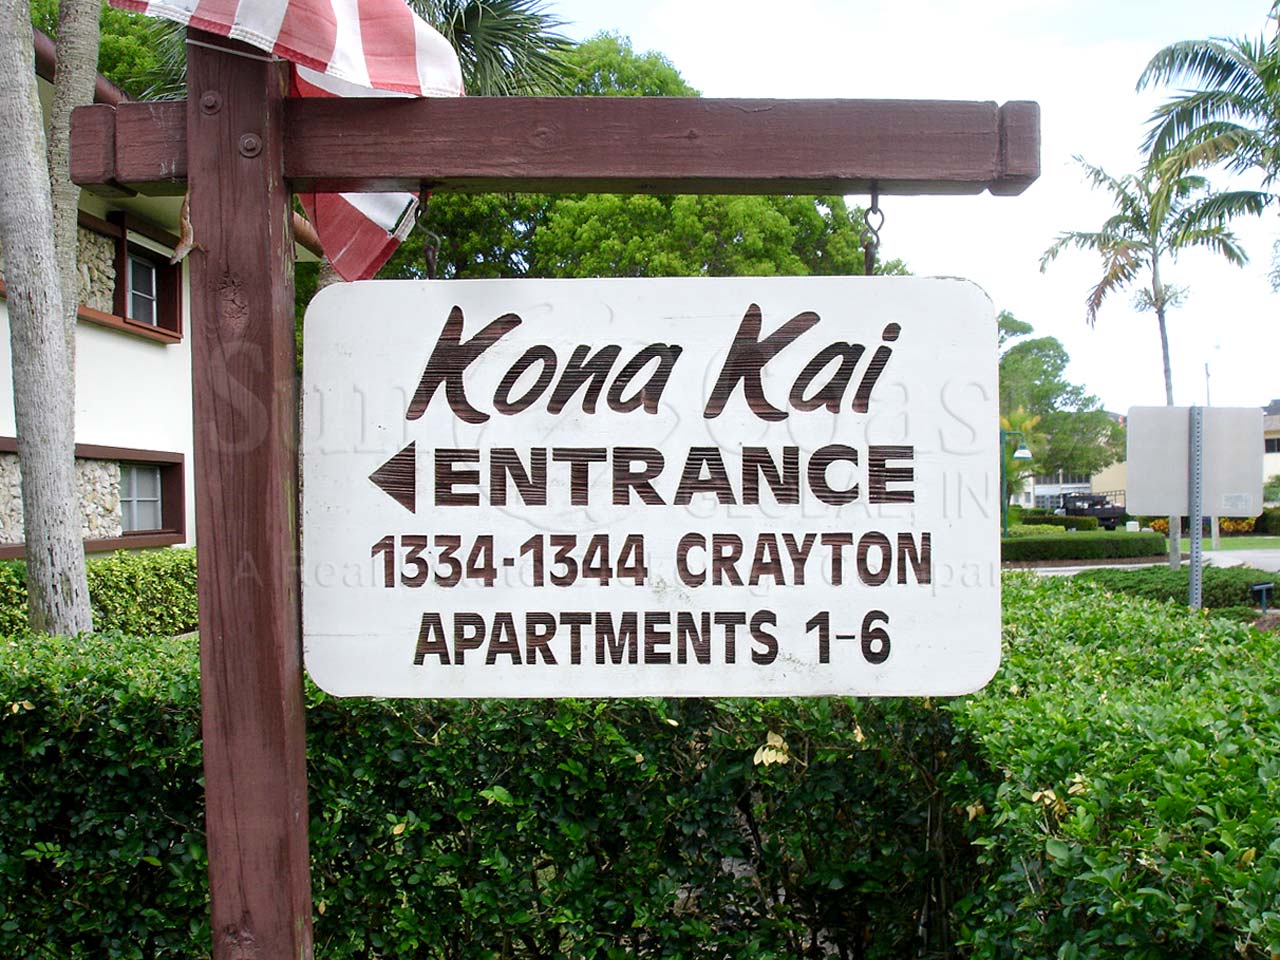 Kona Kai Signage